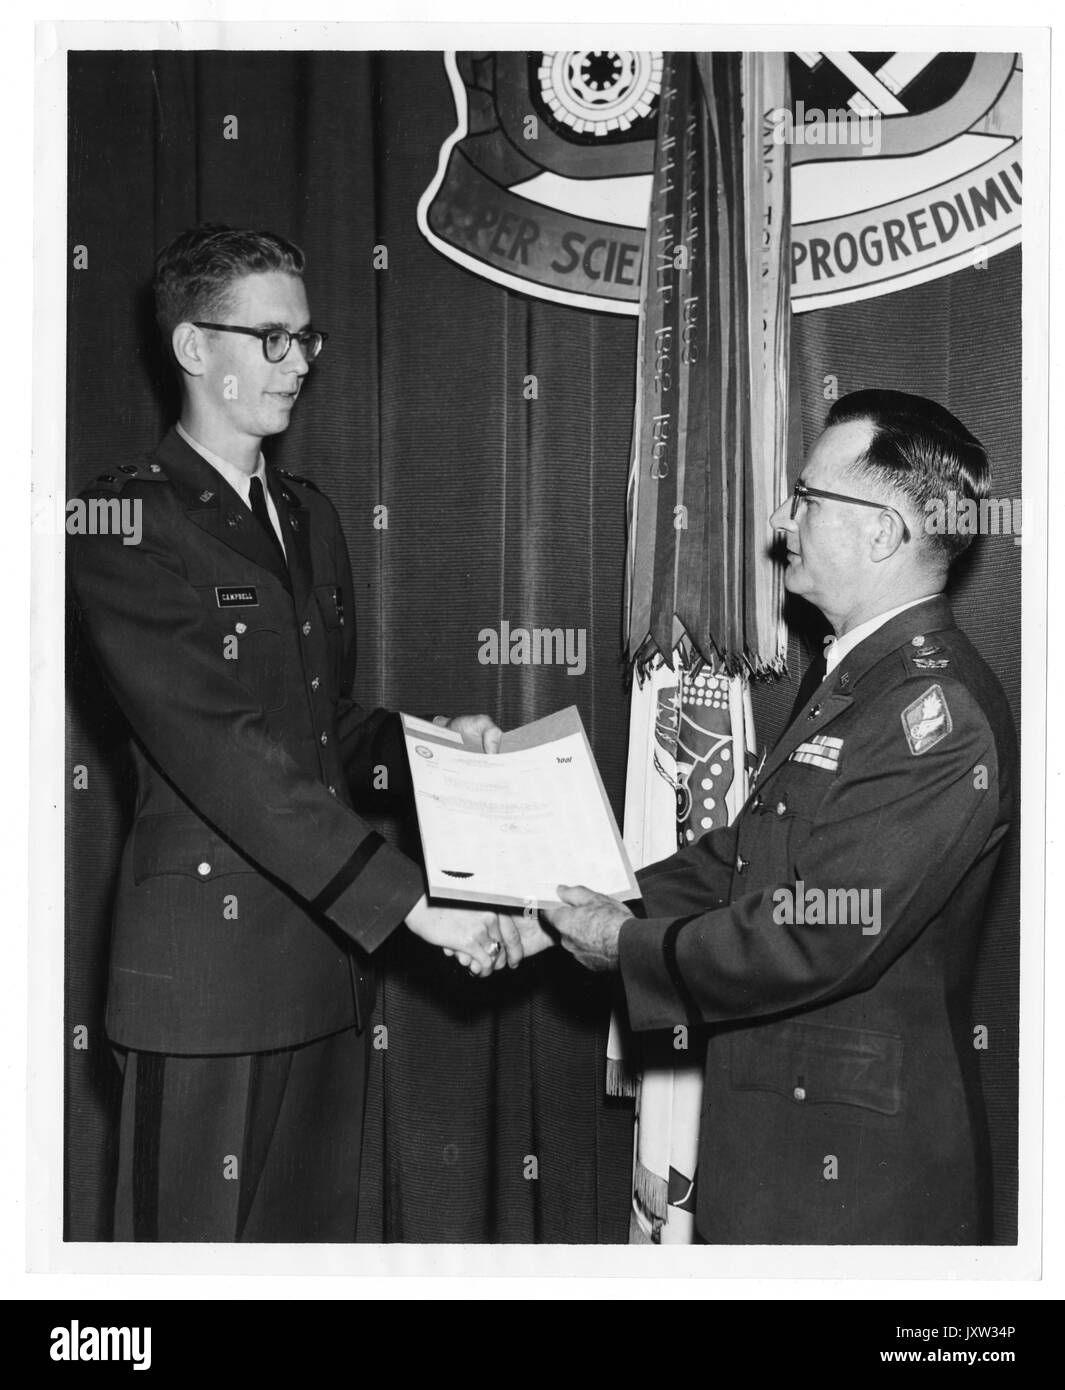 Swain Bruce Campbell, ehrliche Fotografie, Campbell (links) erhält Auszeichnung von Oberst James troth, 1961. Stockfoto